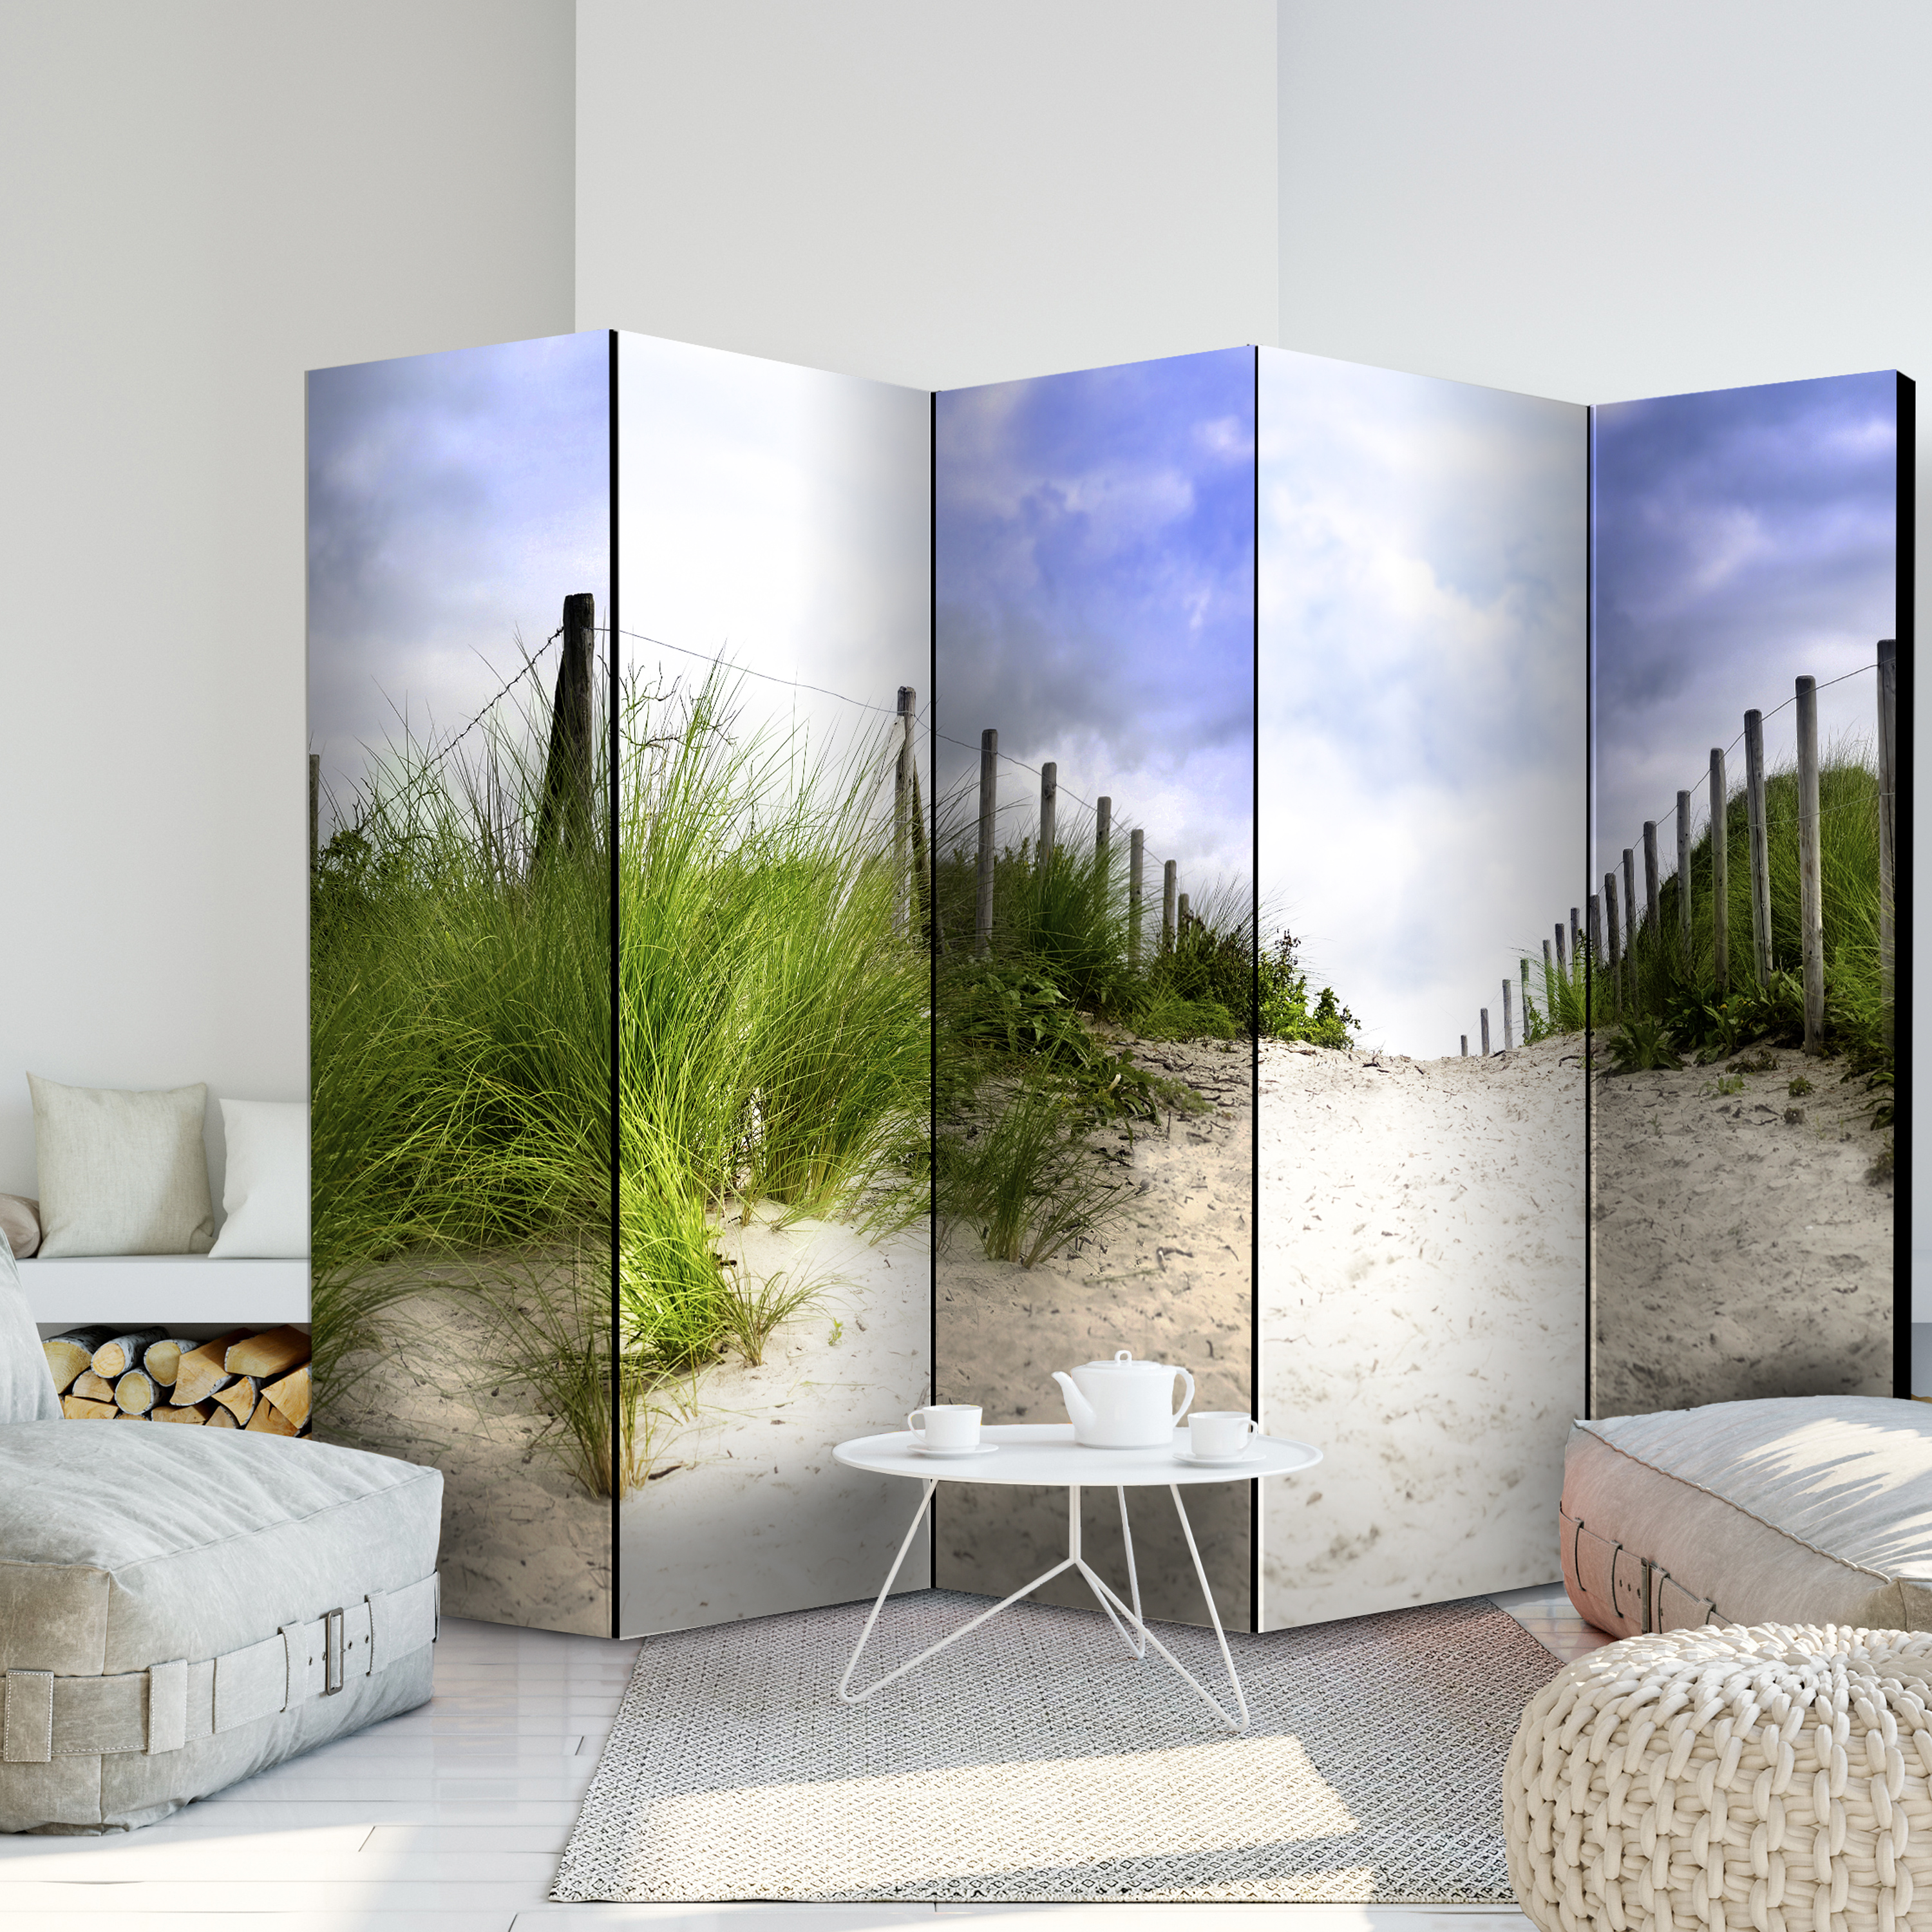 Deko Paravent Raumteiler Trennwand Spanische Wand Strand Landschaft 2 Formate 